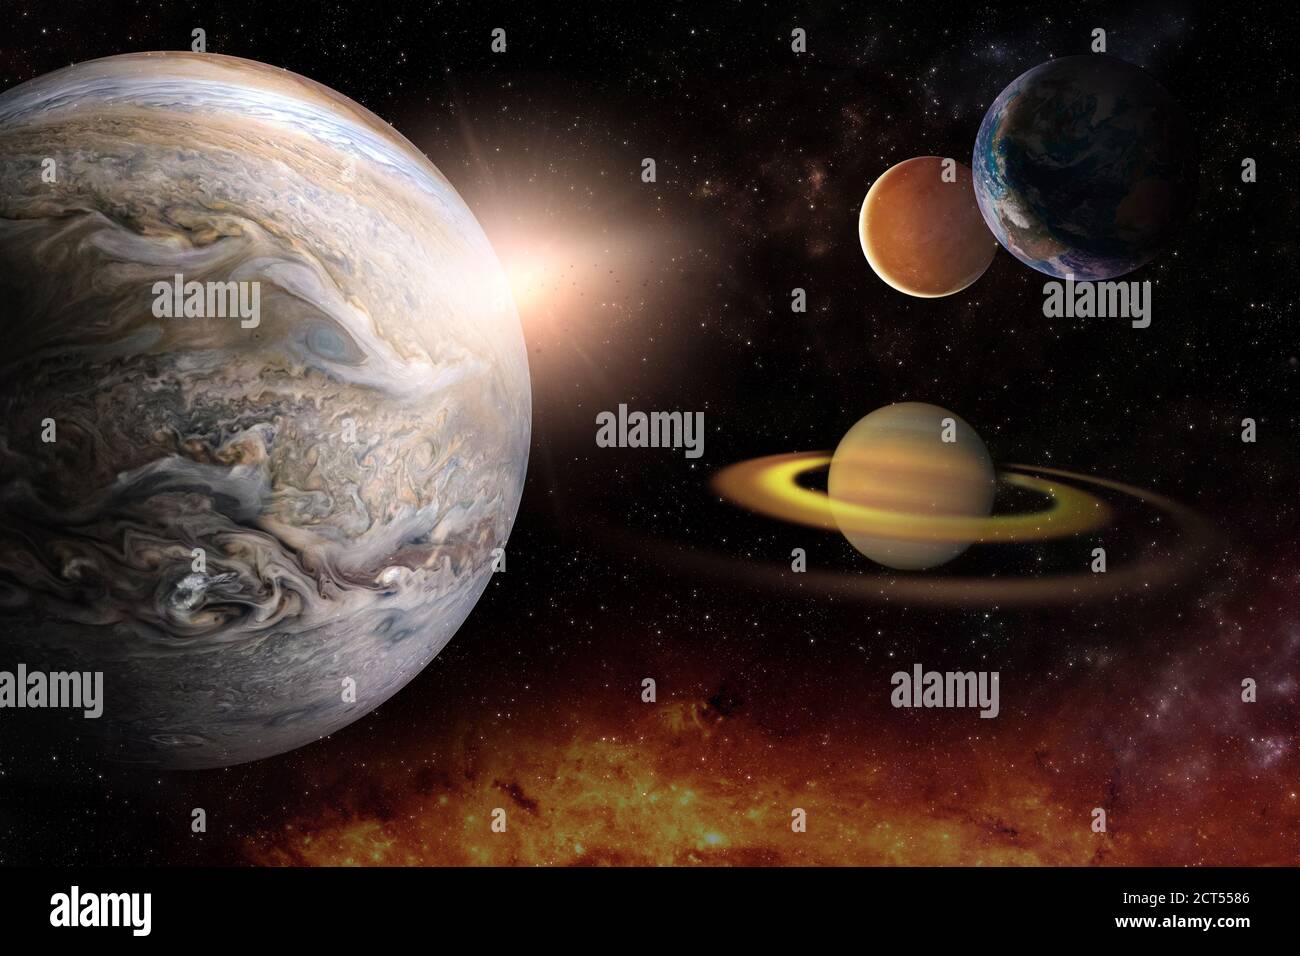 Planeten im Sonnensystem im Sternenuniversum mit Kopie Raumelemente dieses Bildes, die von der NASA eingerichtet wurden Stockfoto